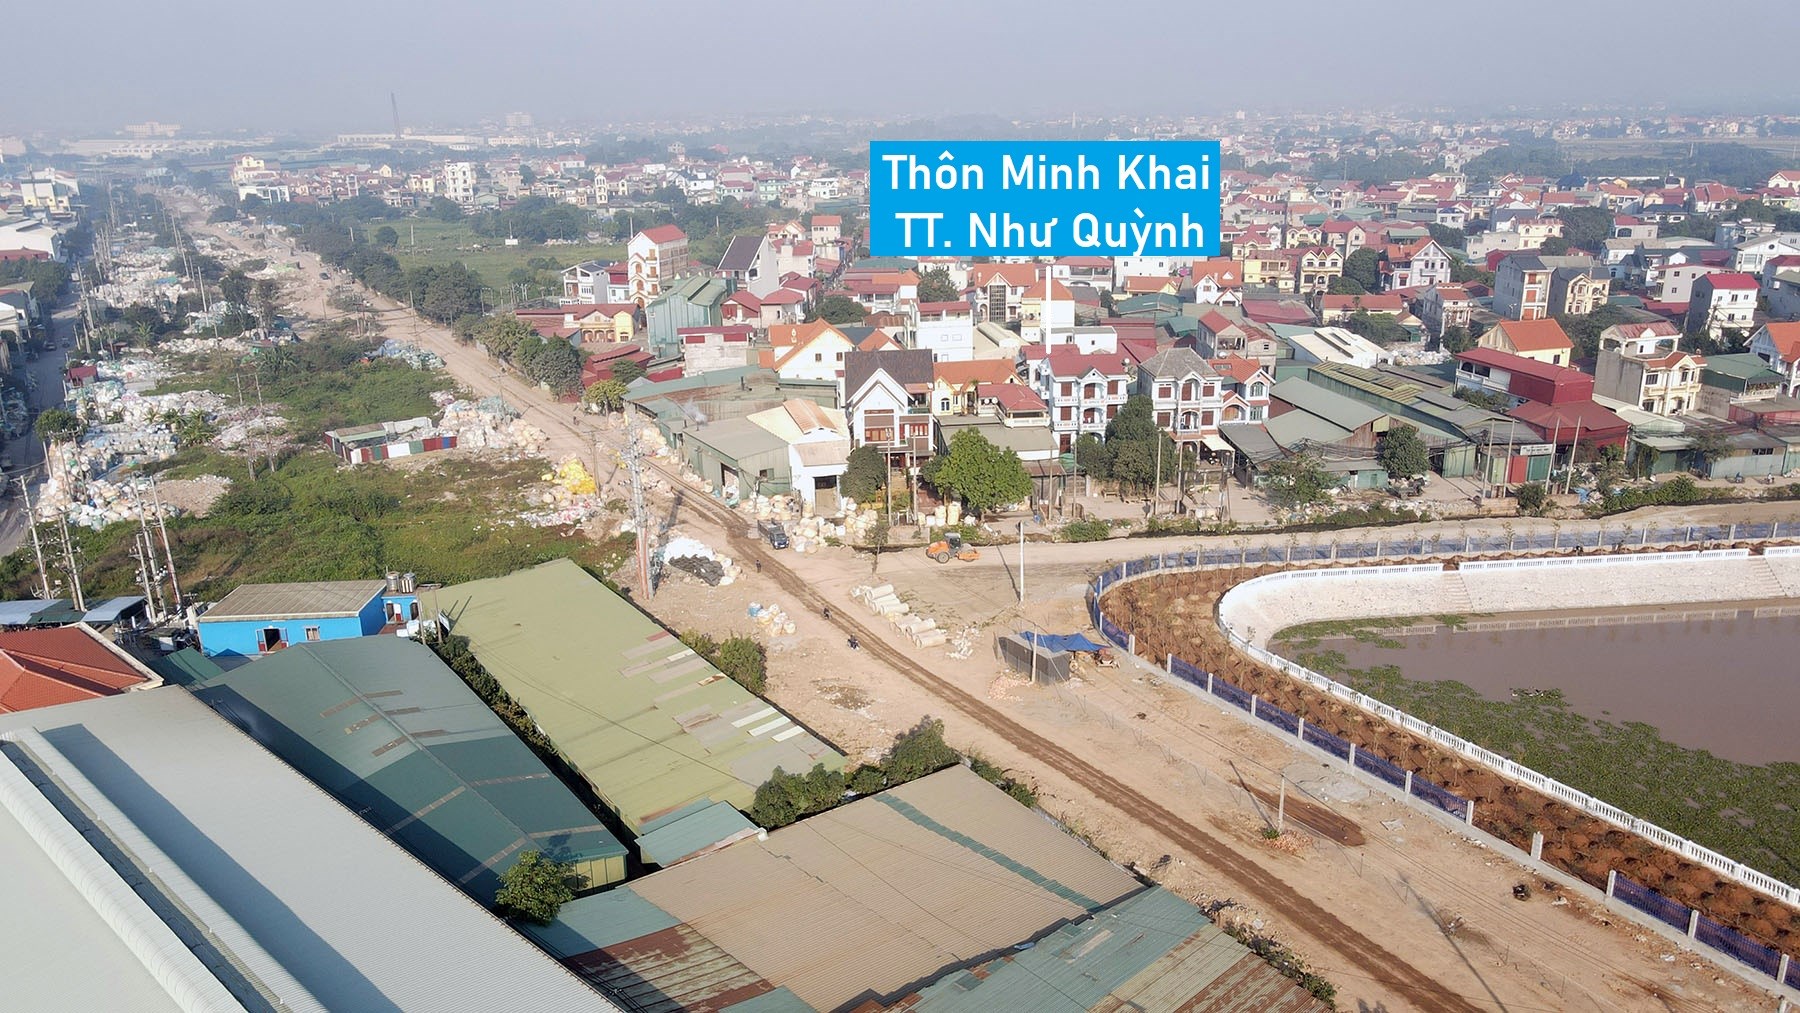 Toàn cảnh cụm công nghiệp Lạc Đạo, Minh Khai đang xây dựng ở Hưng Yên